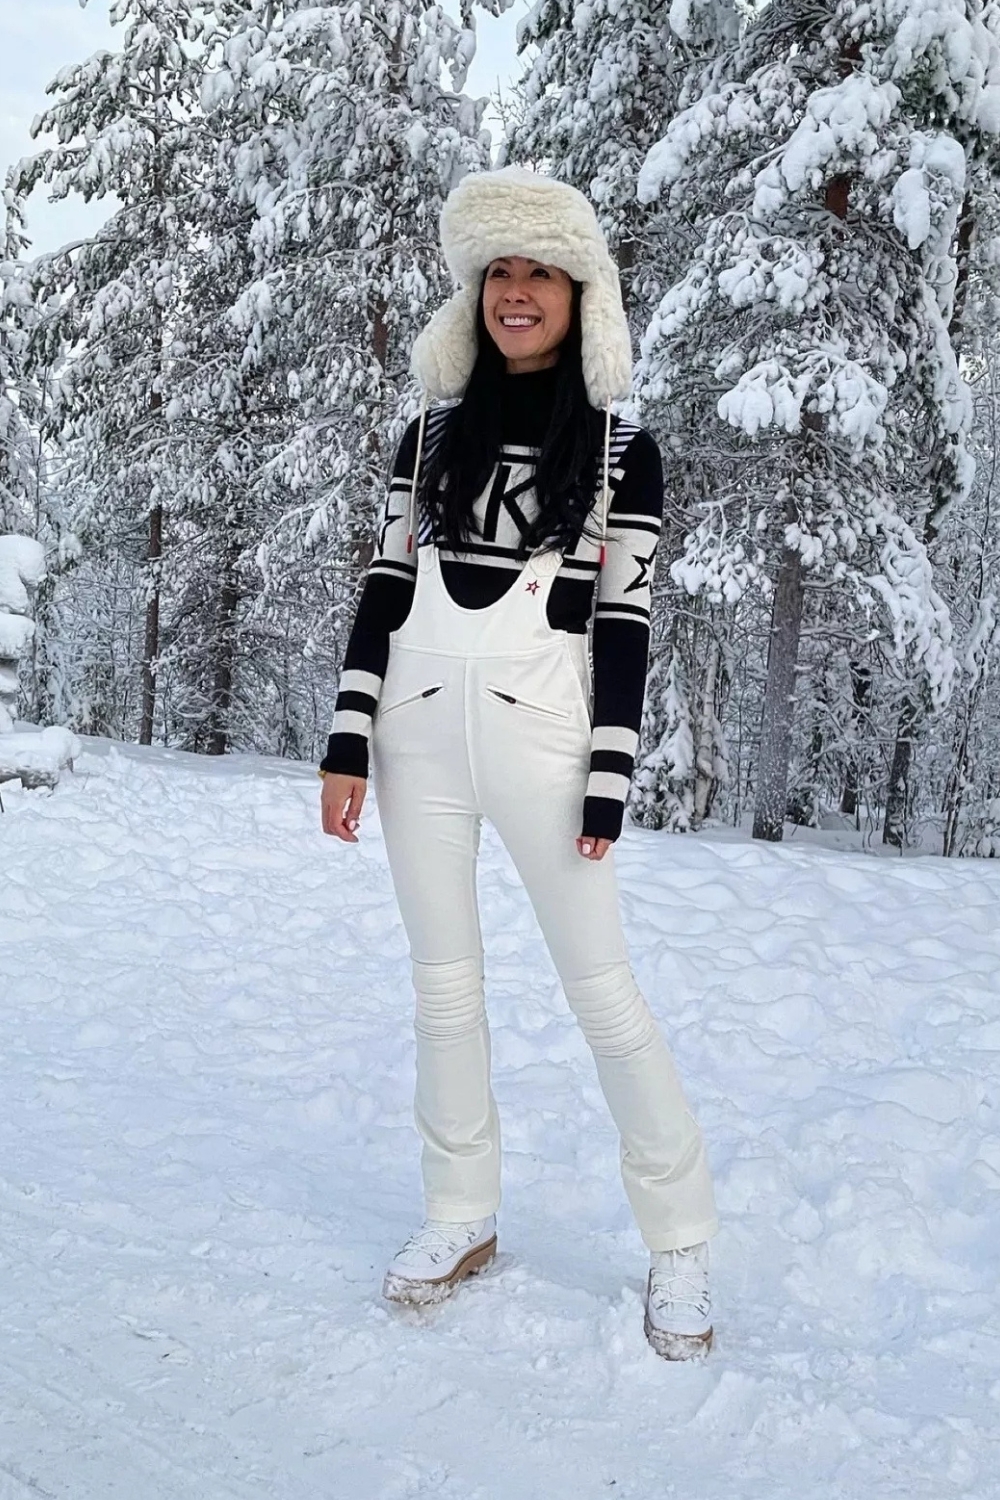 Ski Outfit Ideas with White Ski Suit